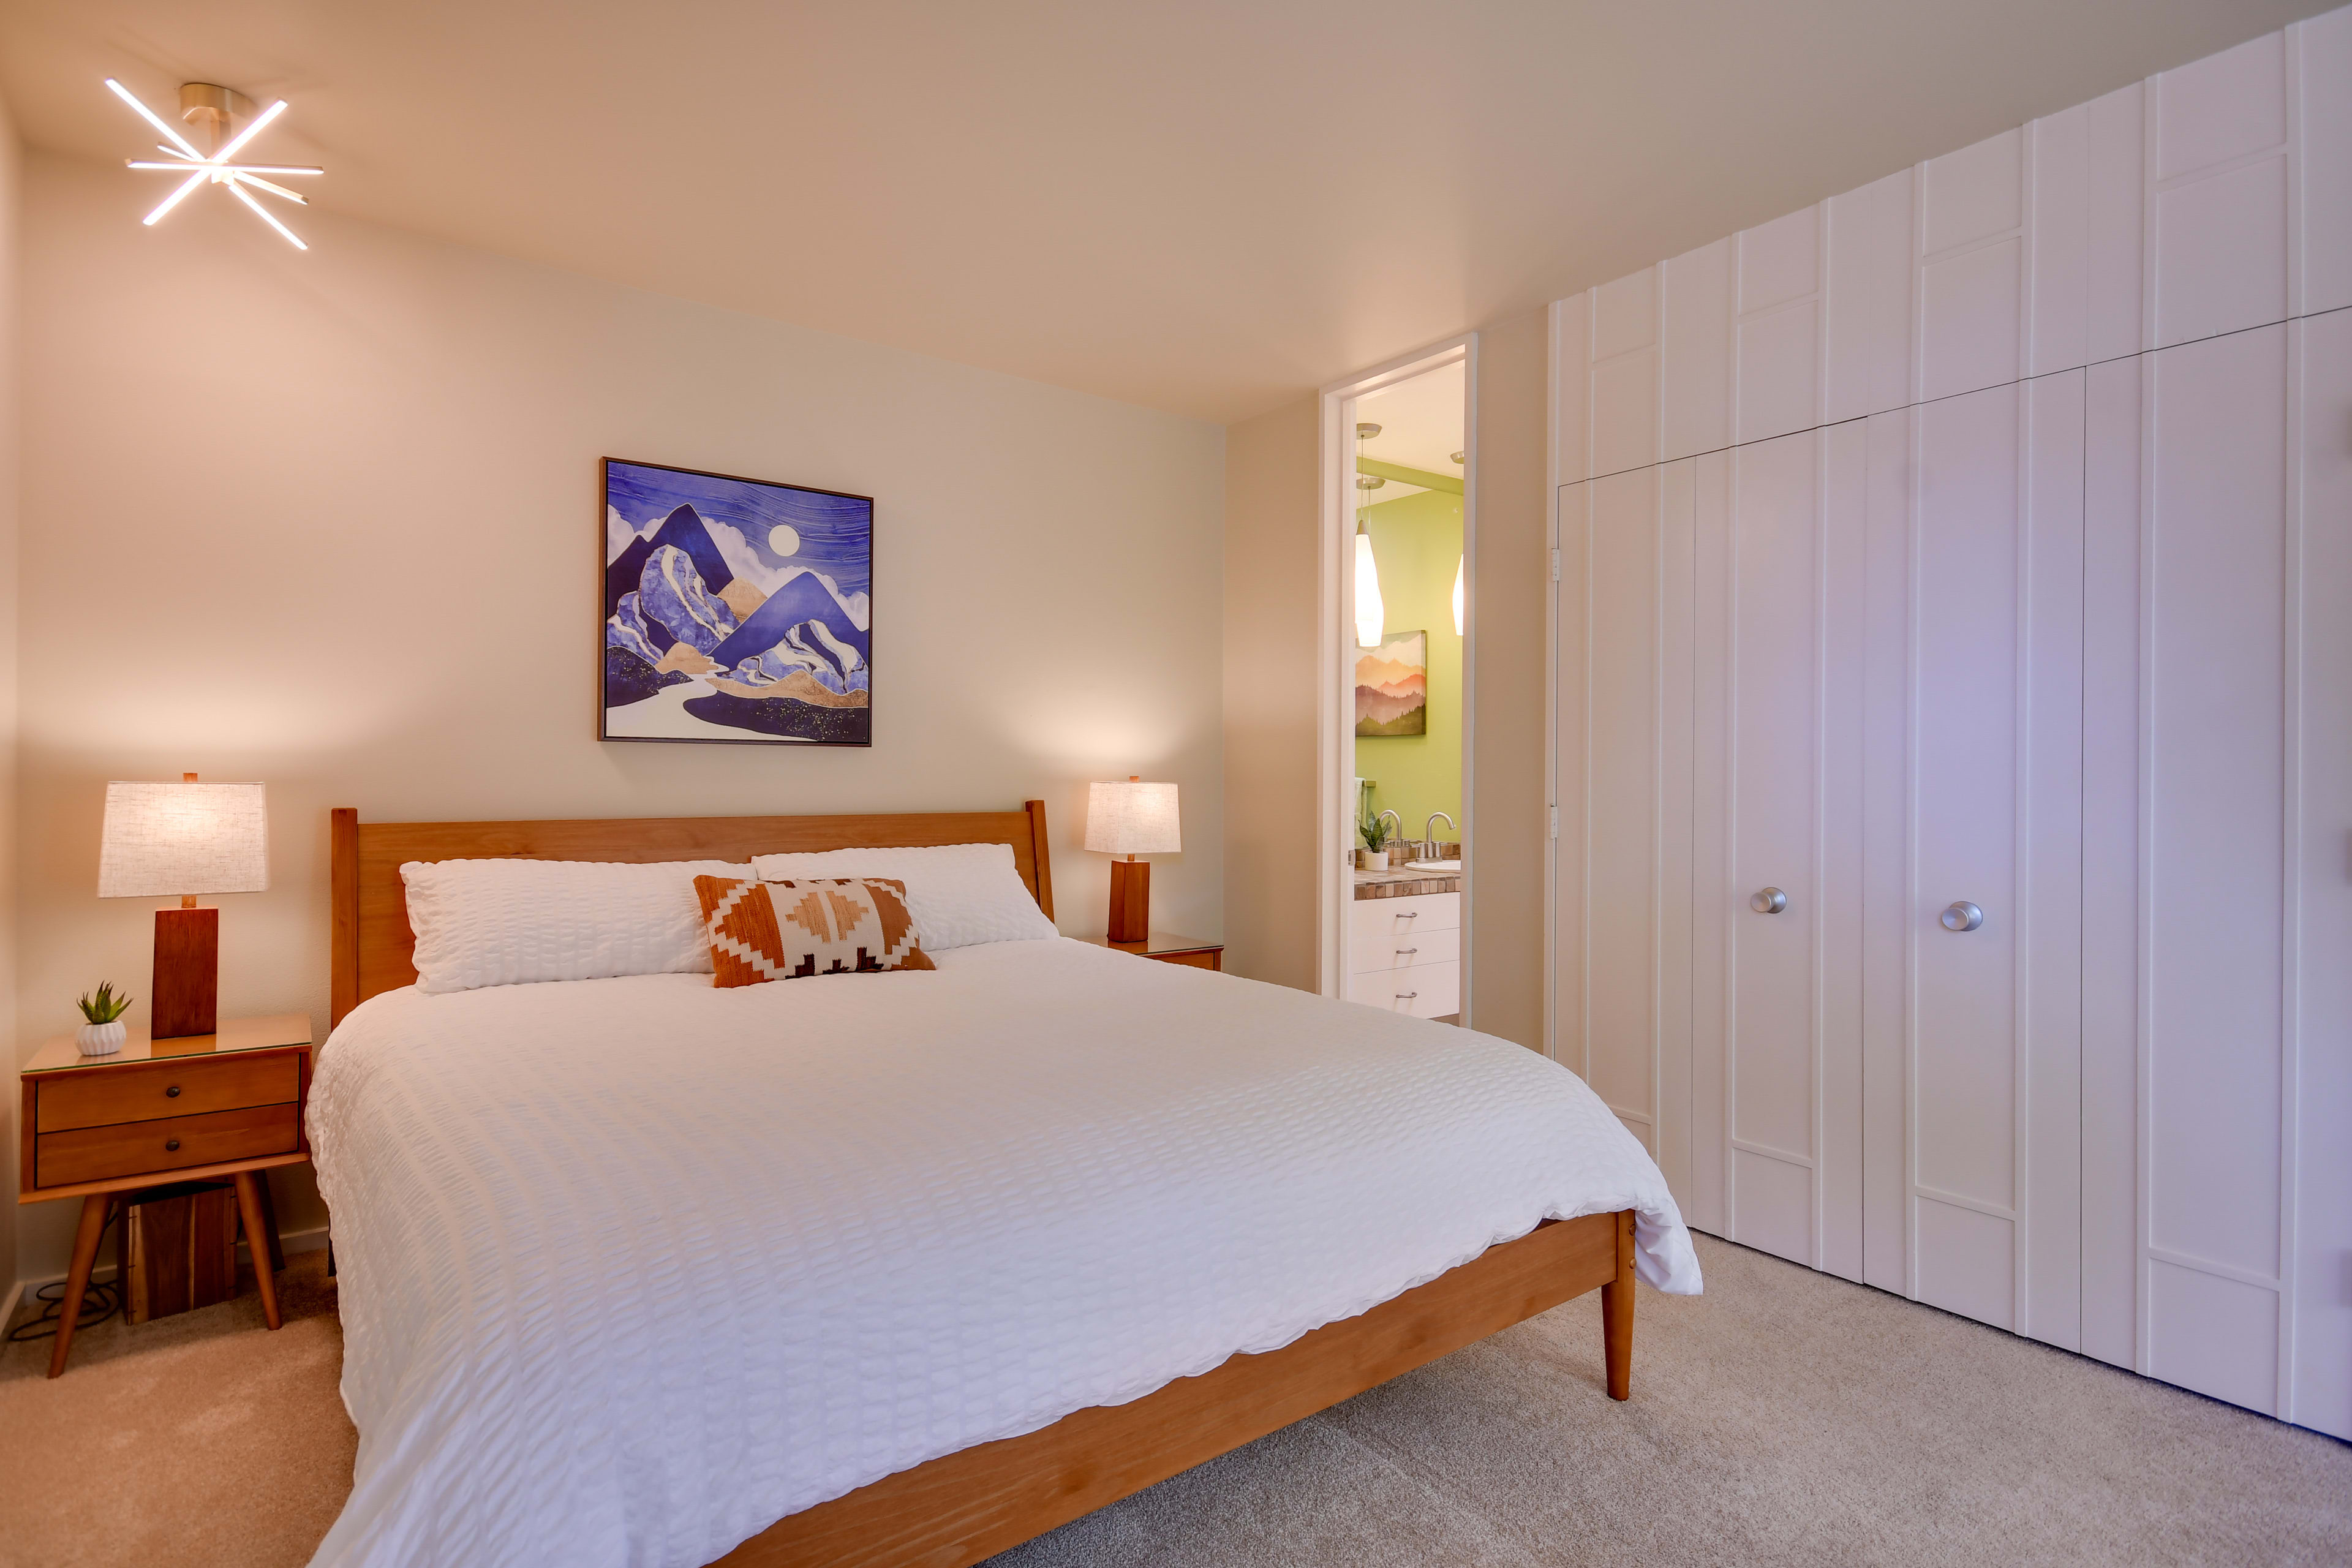 Bedroom 2 | King Bed | Smart TV | En-Suite Bathroom